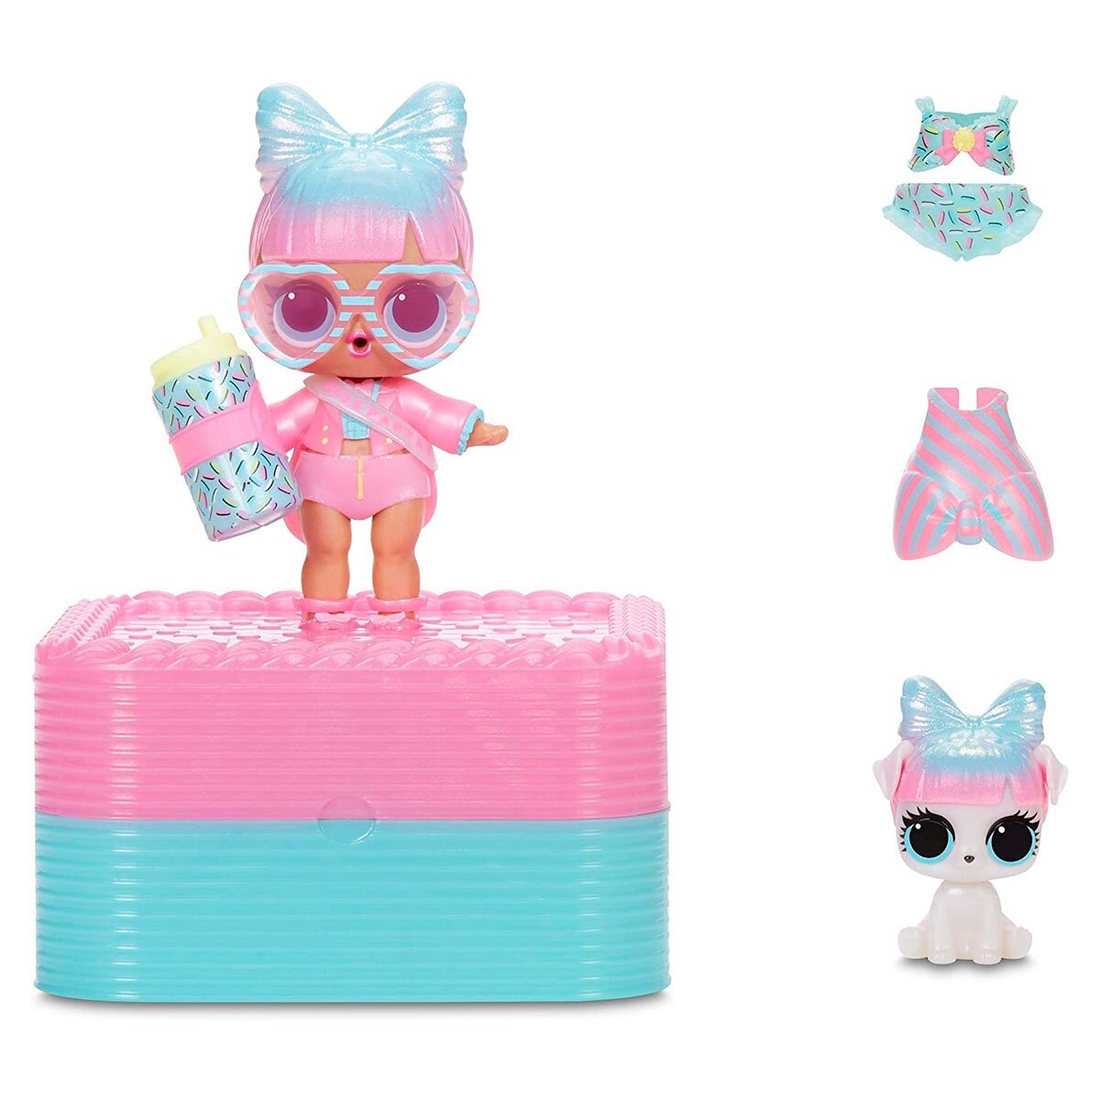 Фото Игровой набор с эксклюзивной куклой L.O.L. Surprise! серии Present Surprise - Суперподарок розовый (570691)